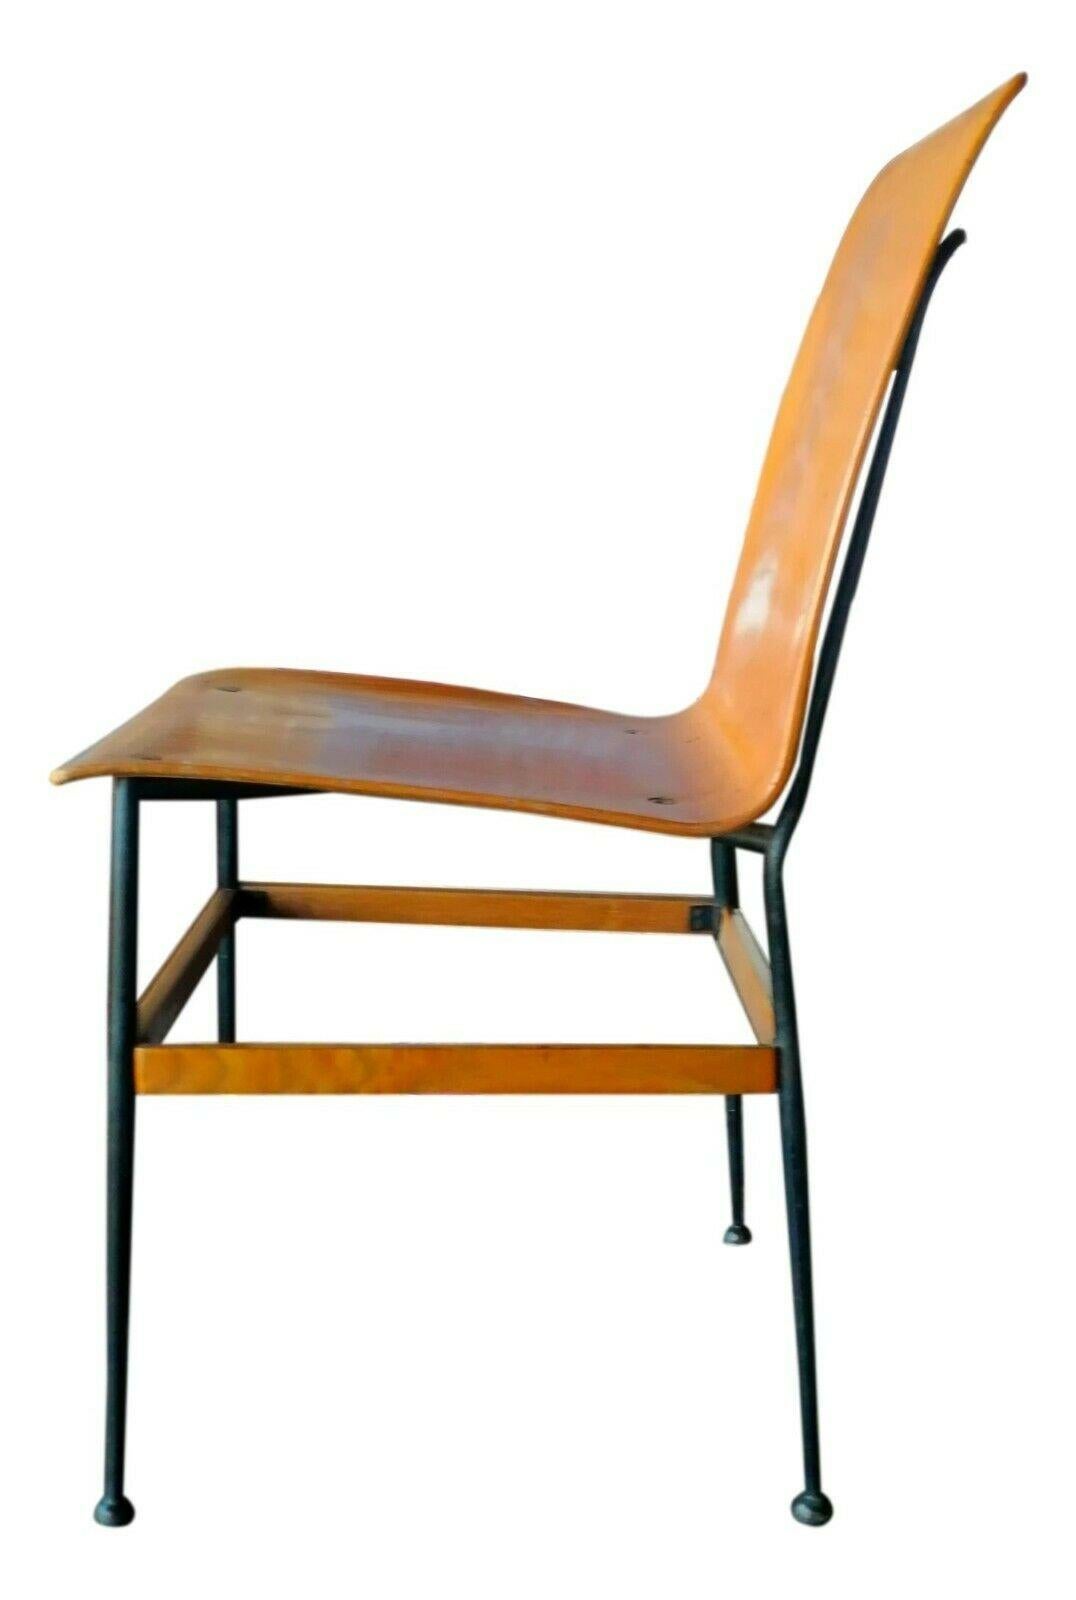 Seltenes Konvolut von vier Stühlen, wahrscheinlich eine Zeichnung von eugenia alberti reggio und rinaldo scaioli, Originale aus den 1960er Jahren

aus gebogenem Sperrholz auf einem Metallrahmen mit Gelenken zwischen den Holzbeinen

sie messen 75